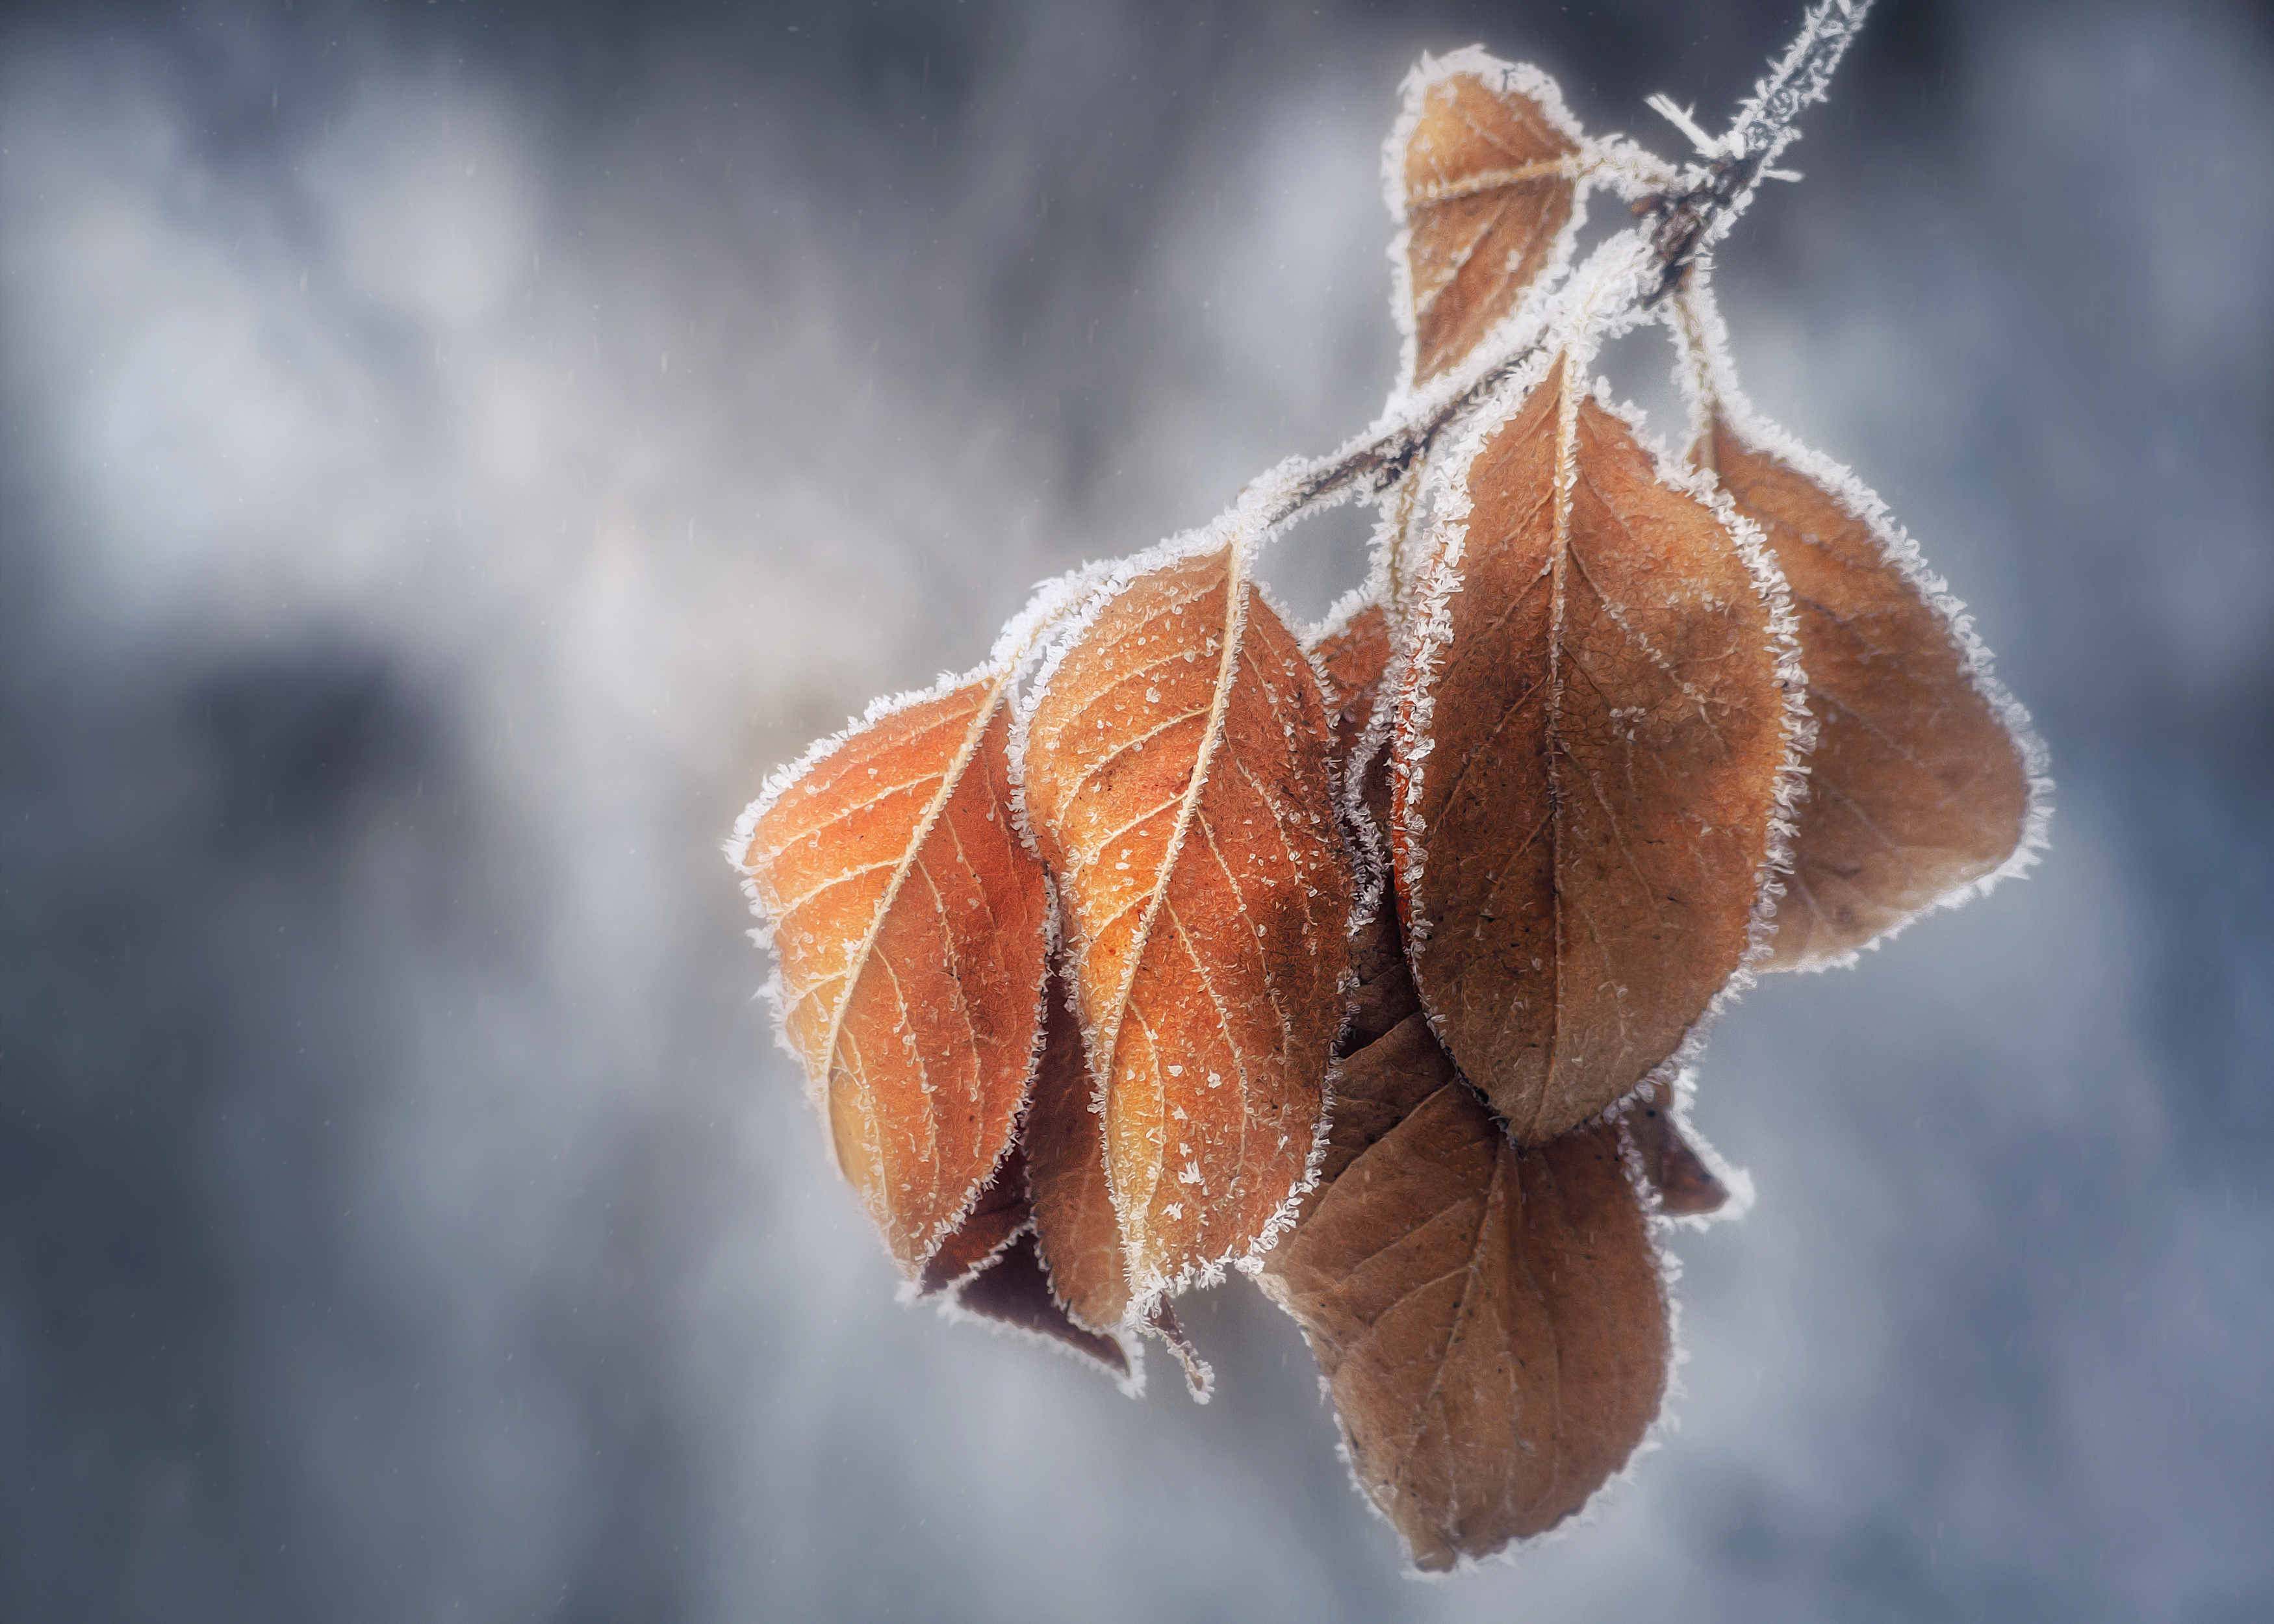 листья зима снег иней свет цвет природа фотограф фотография фон боке, Еремеев Дмитрий